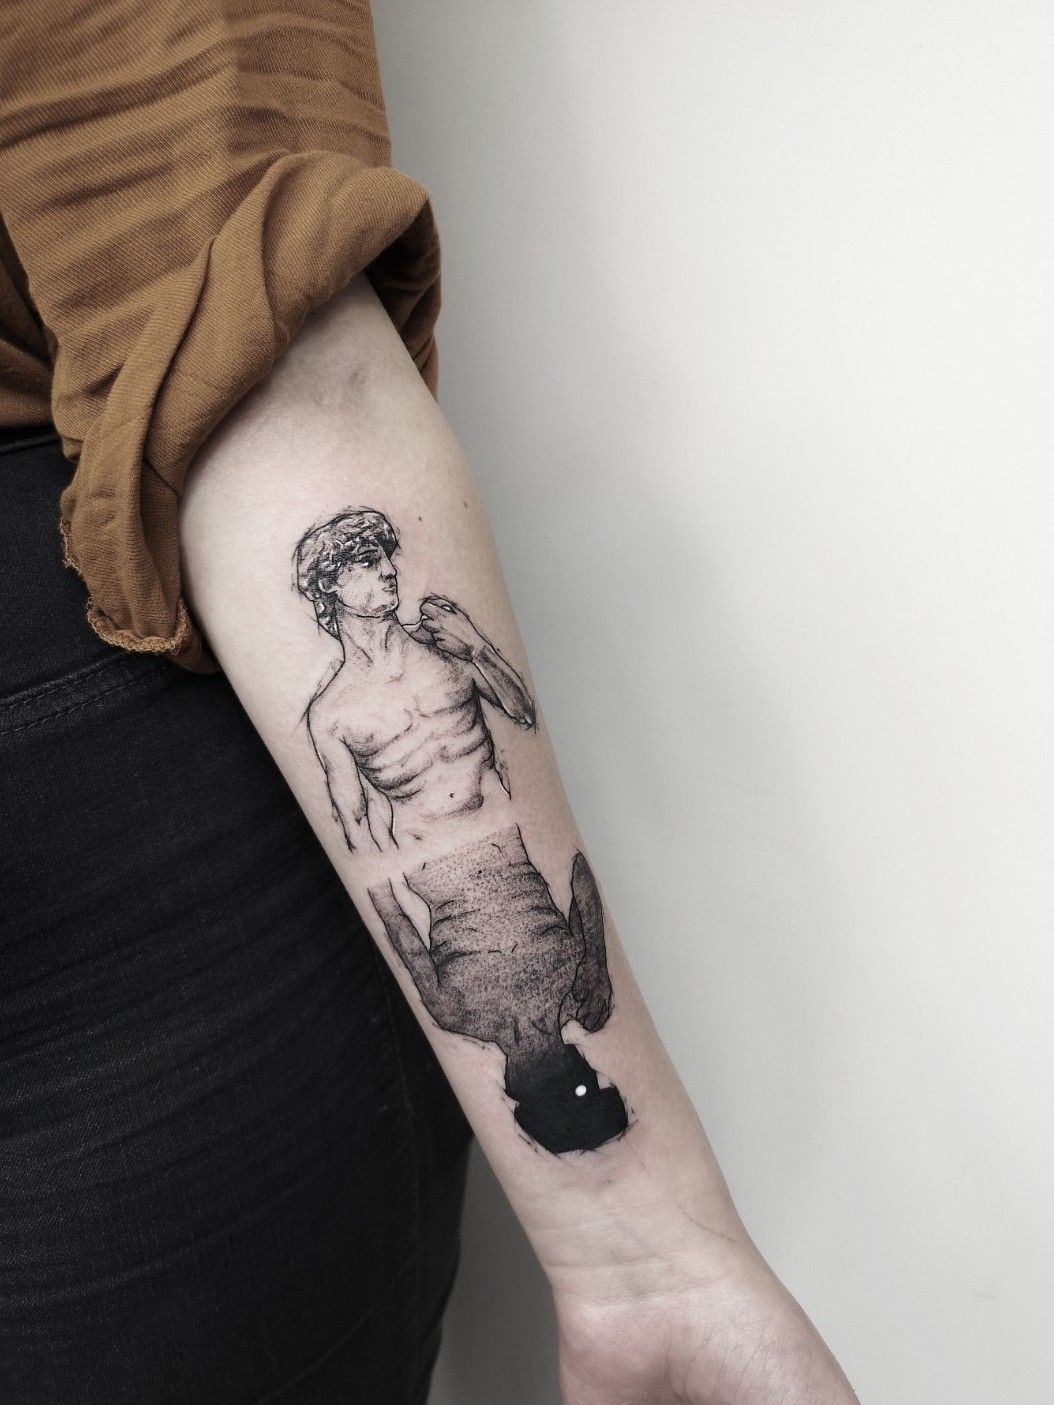 ＤＡＶＩＤ realistic style david sculpture tattoo davidsculpture tattoos  tattooed tattooedgirls tattooer tattooart tattooartist  Instagram